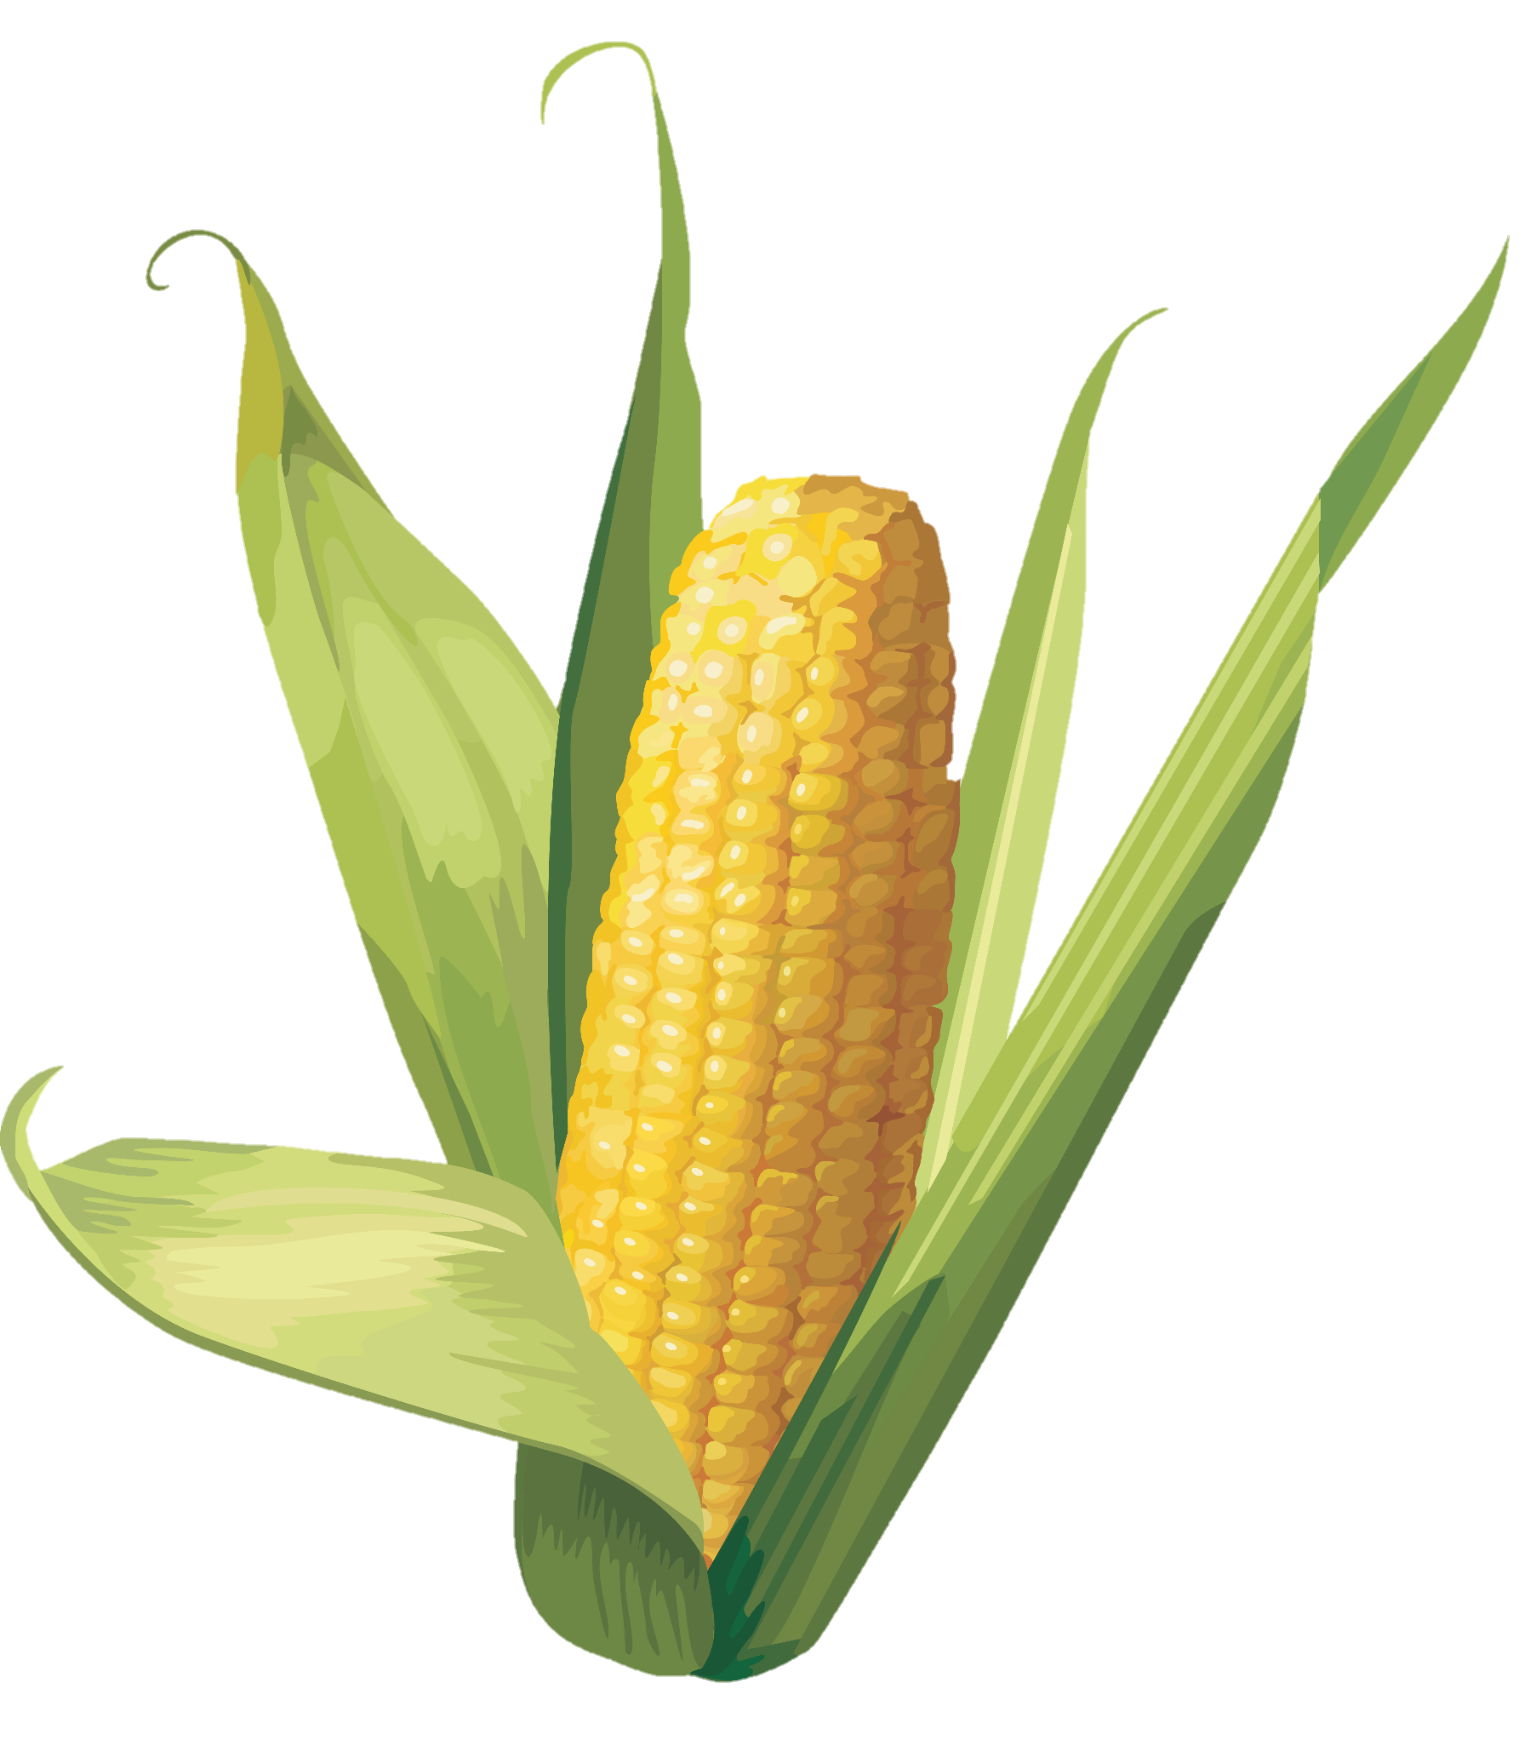 Corn-5